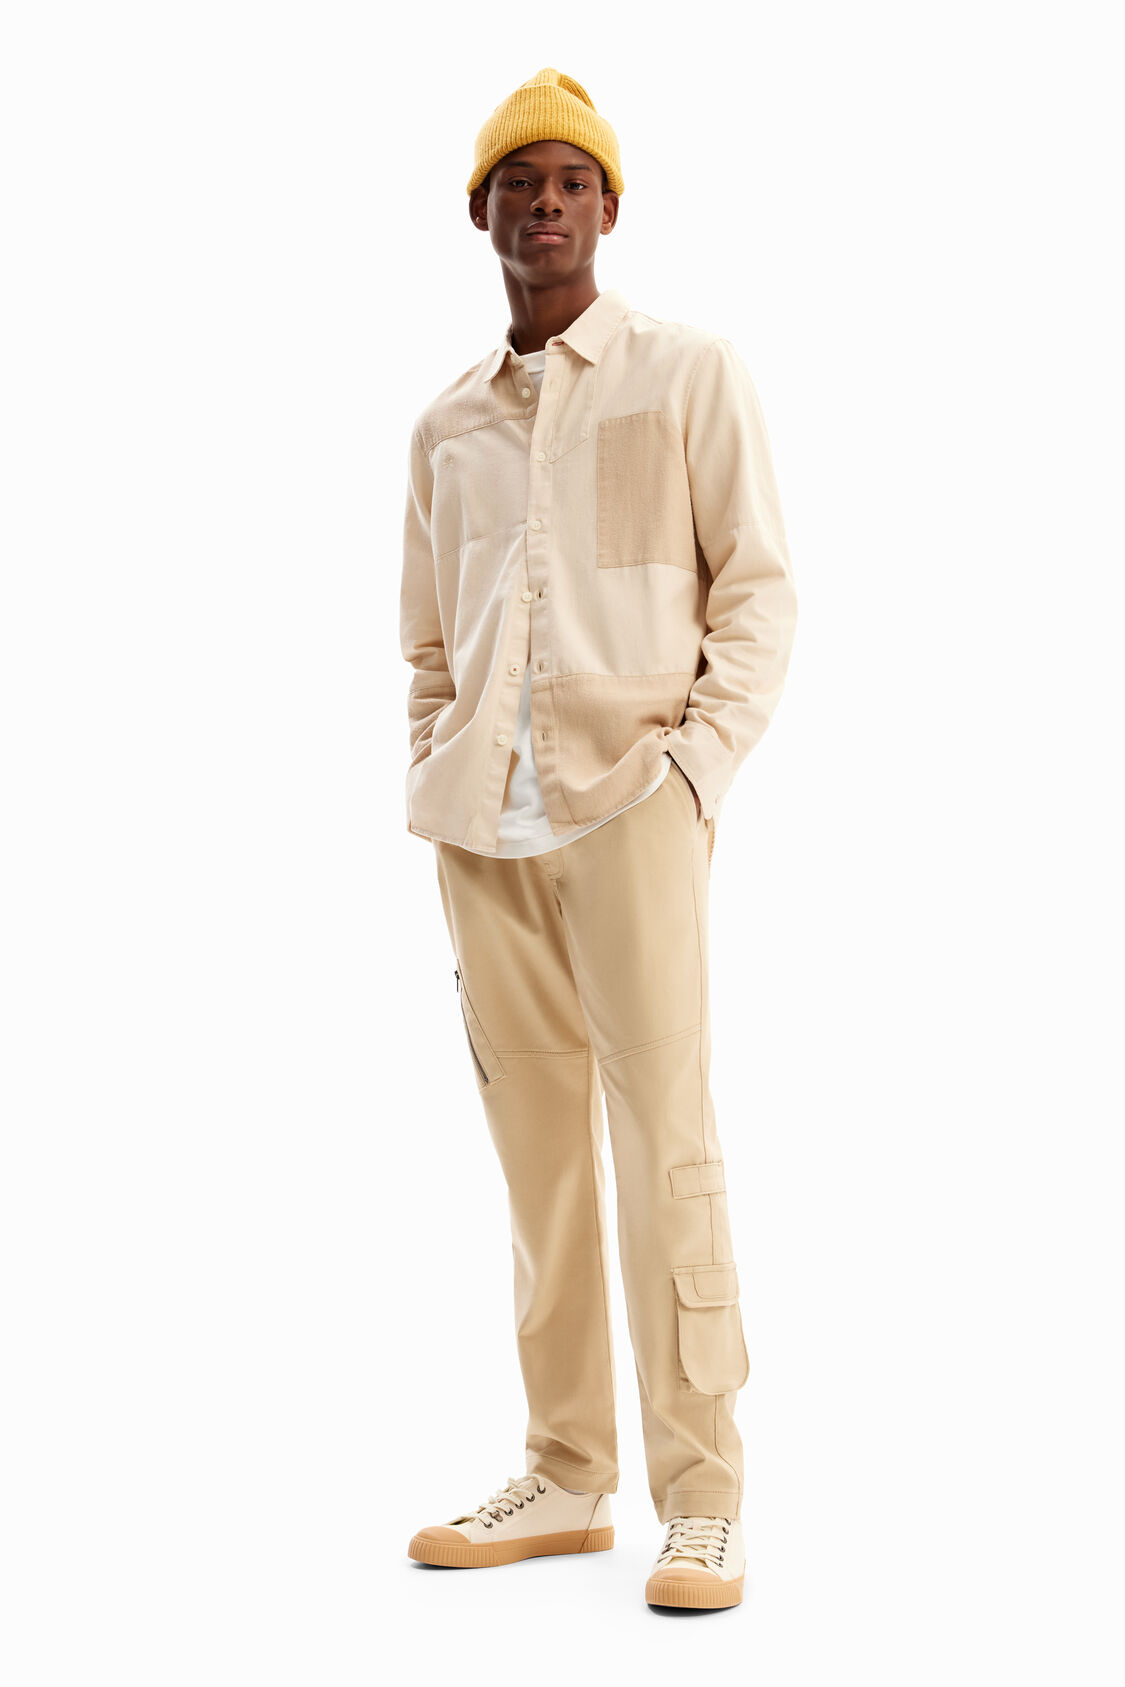 Desigual - Hombre - Camisa con patchwork y denim - Victor - Size L ·